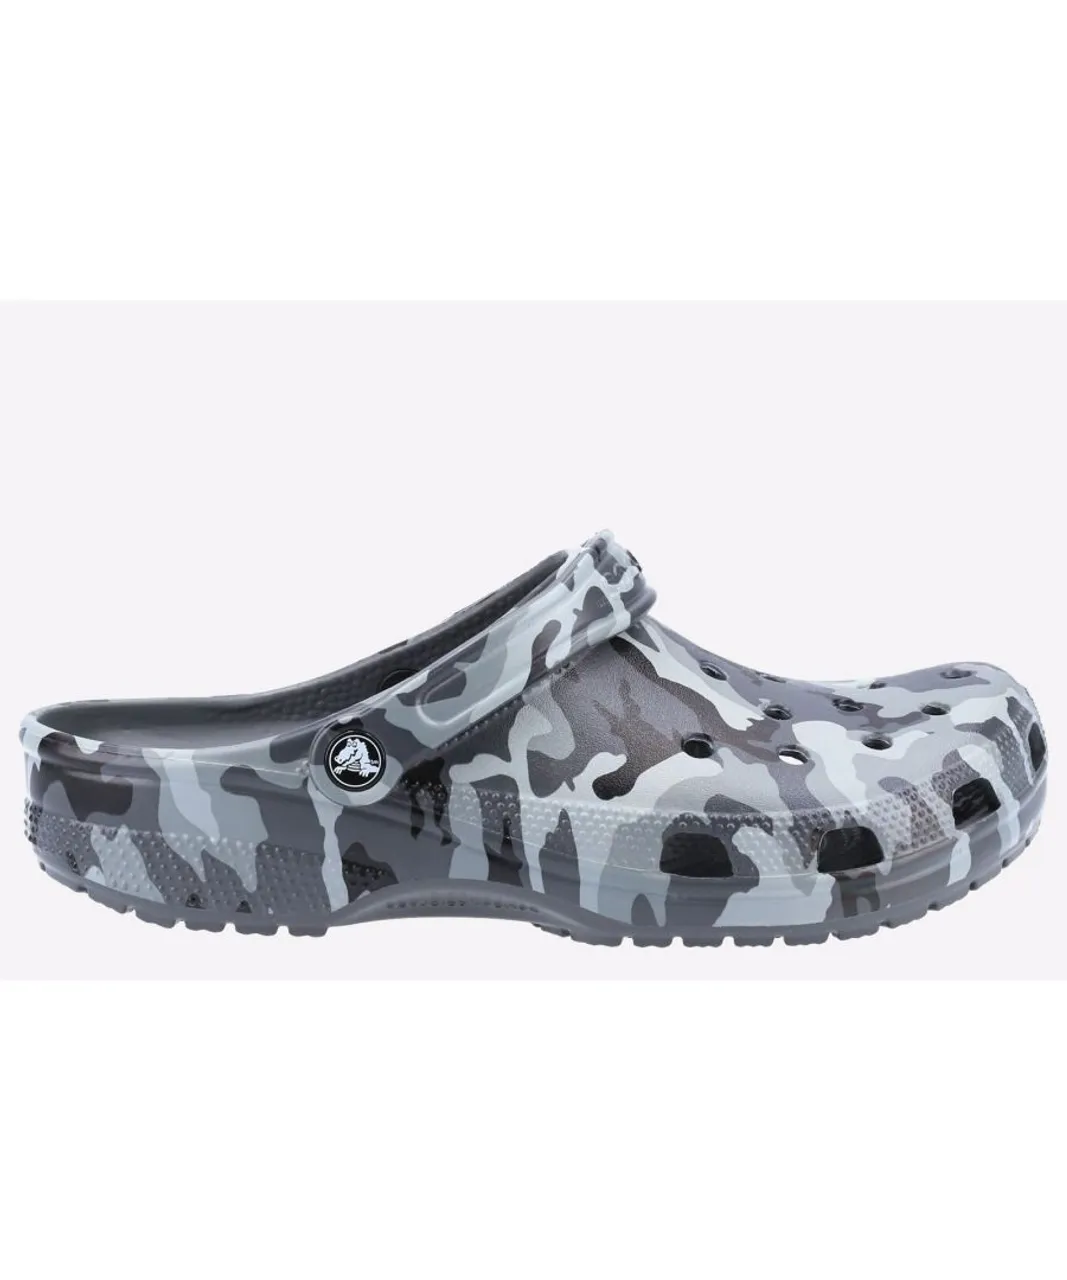 Crocs Seasonal Camo Unisex - Grey